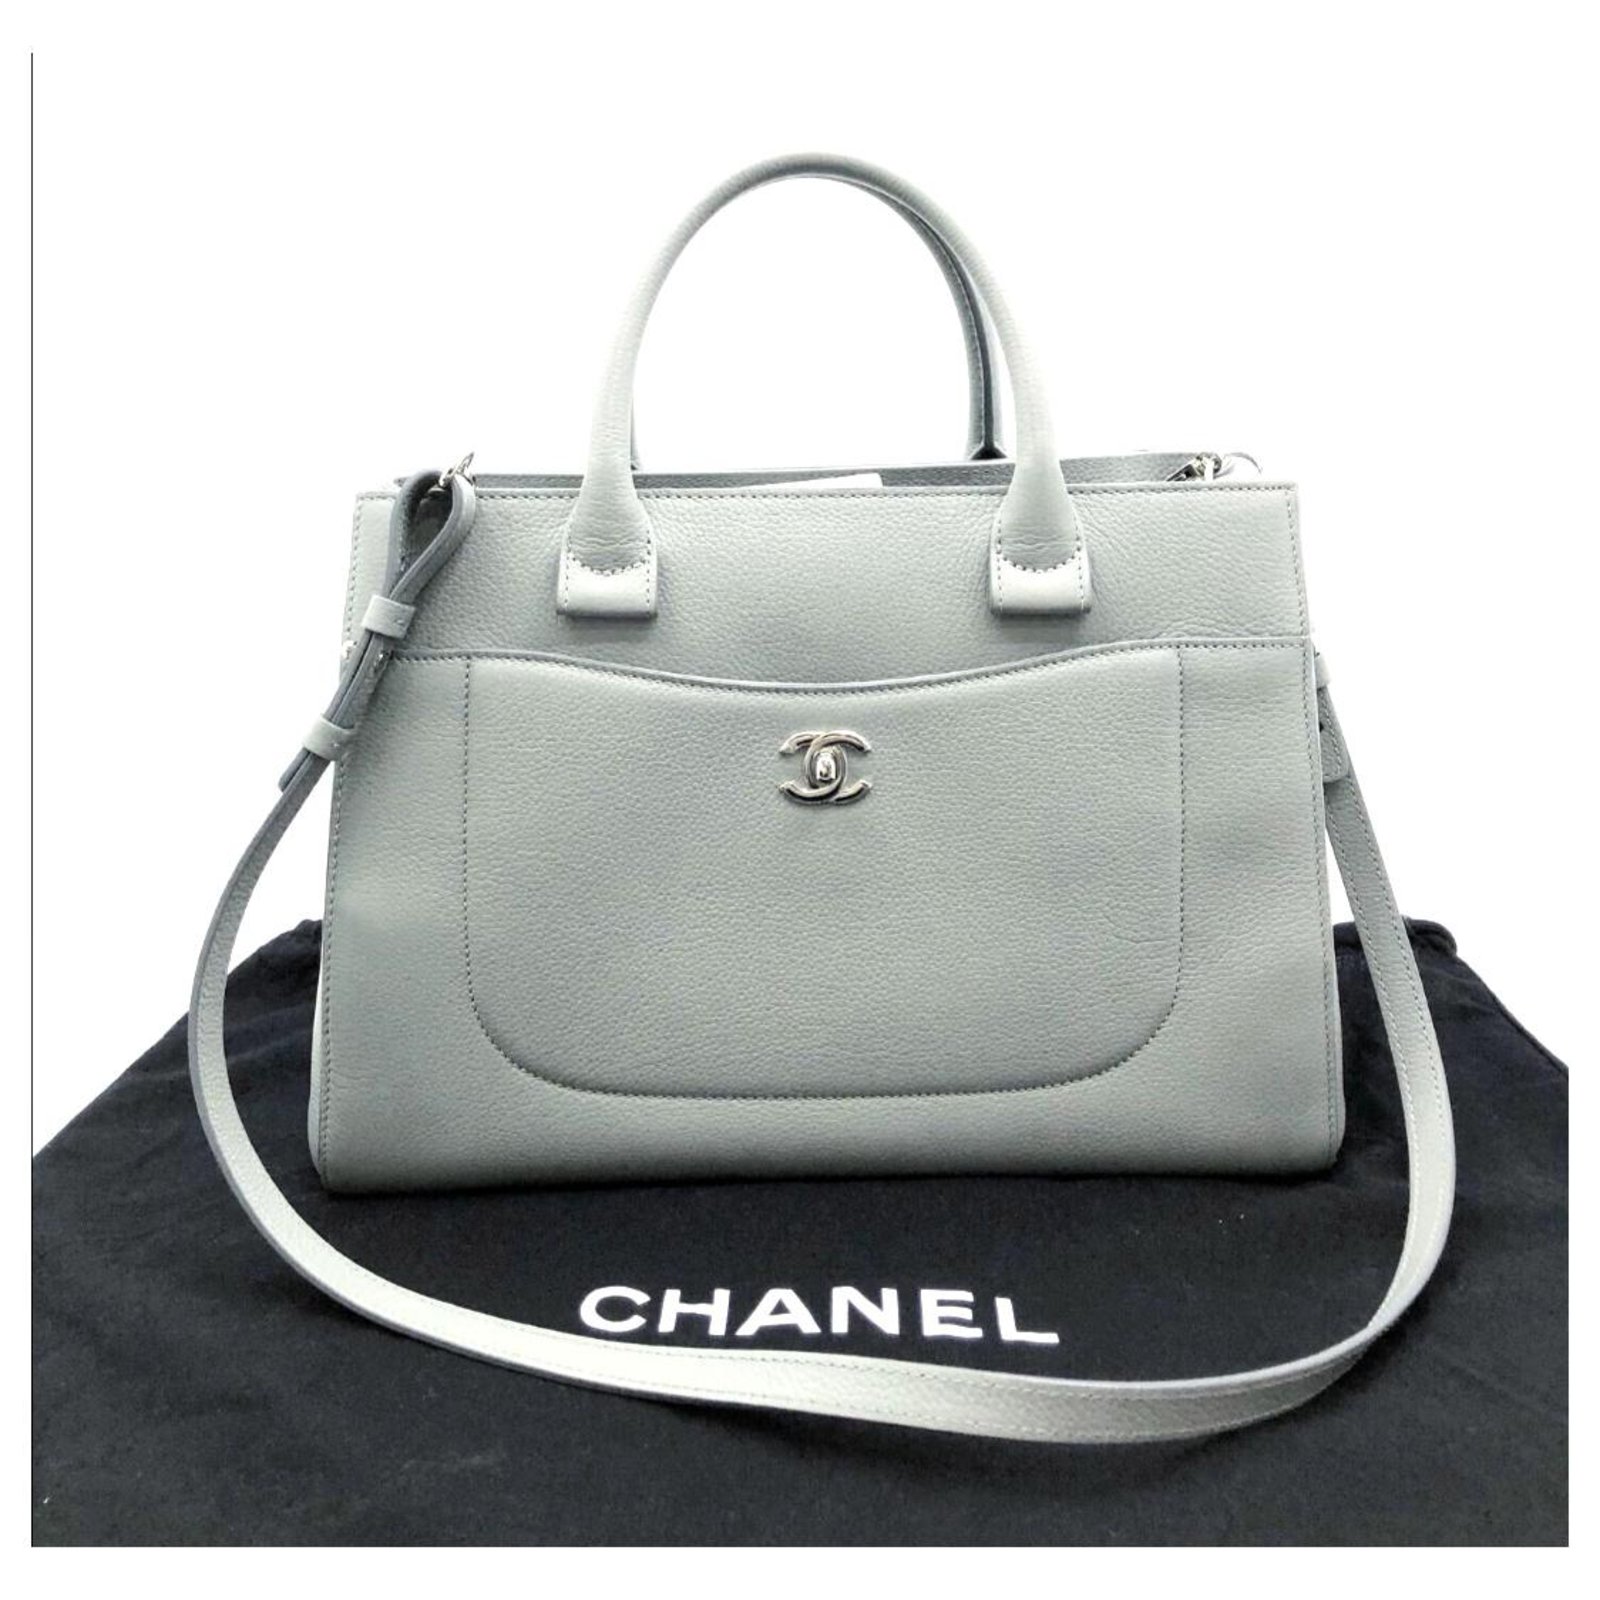 Auth CHANEL Neo Executive Tote Handbag Crossbody Shoulder Bag Navy/Black  99470a